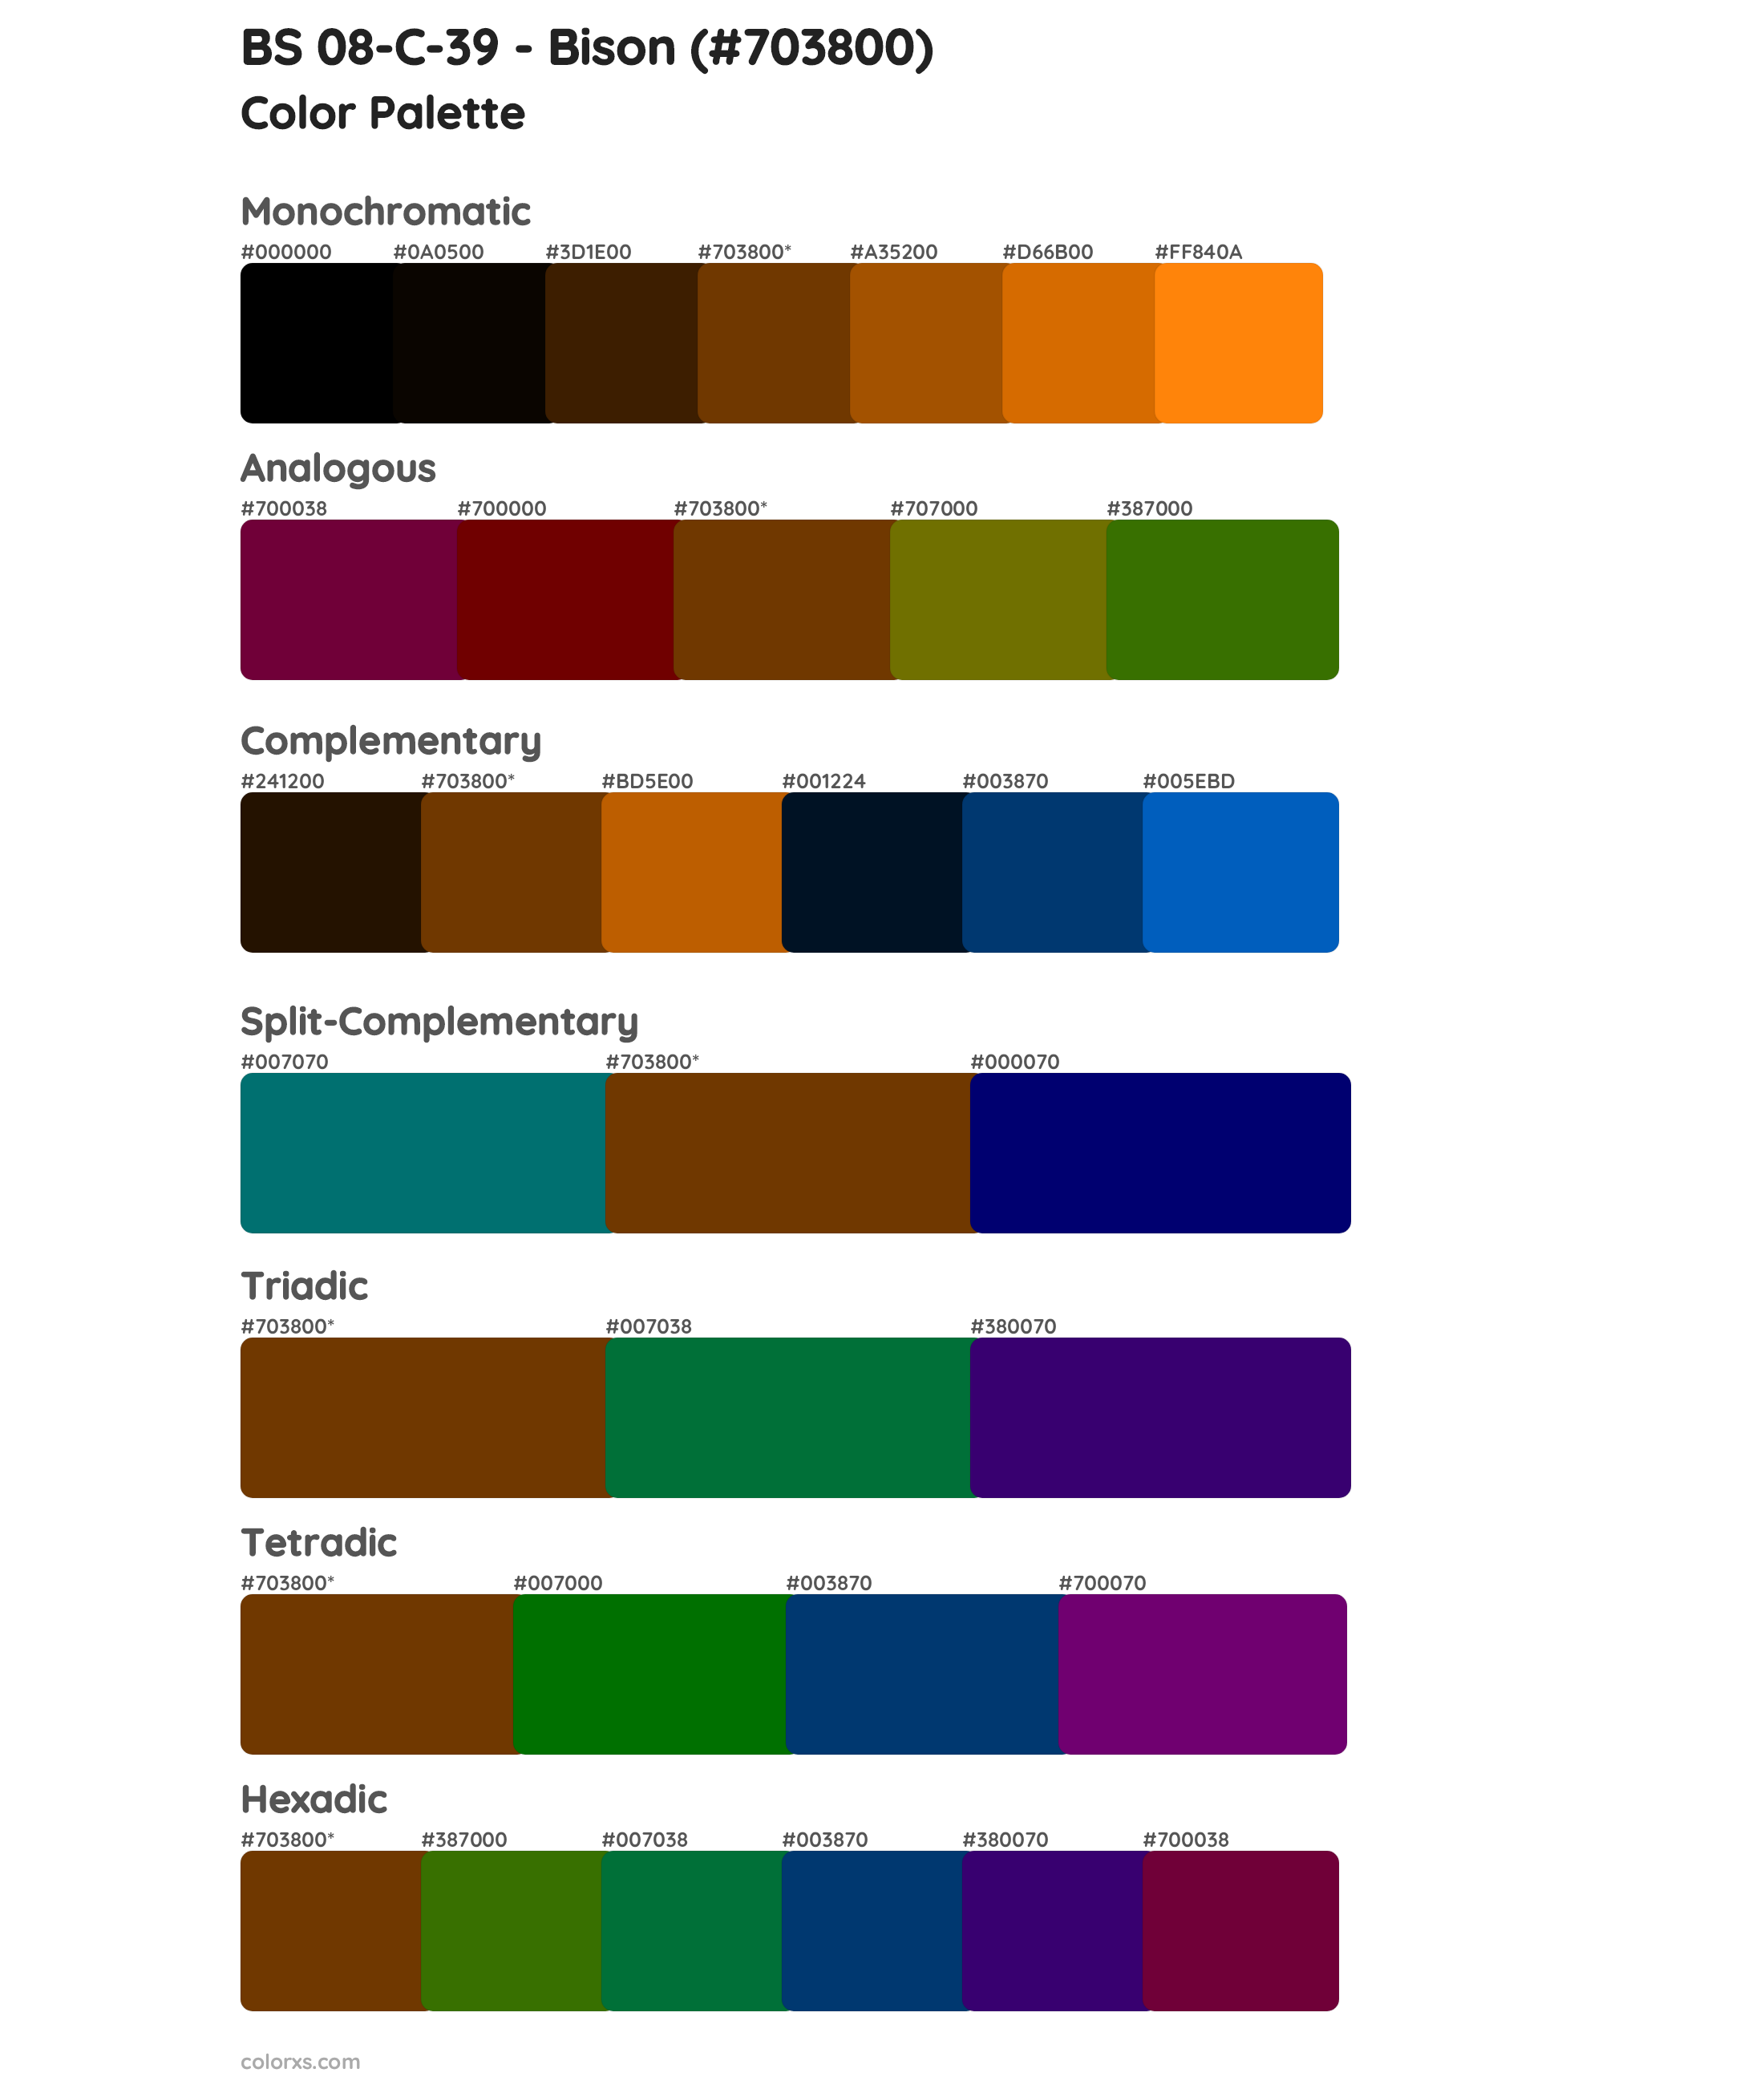 BS 08-C-39 - Bison Color Scheme Palettes